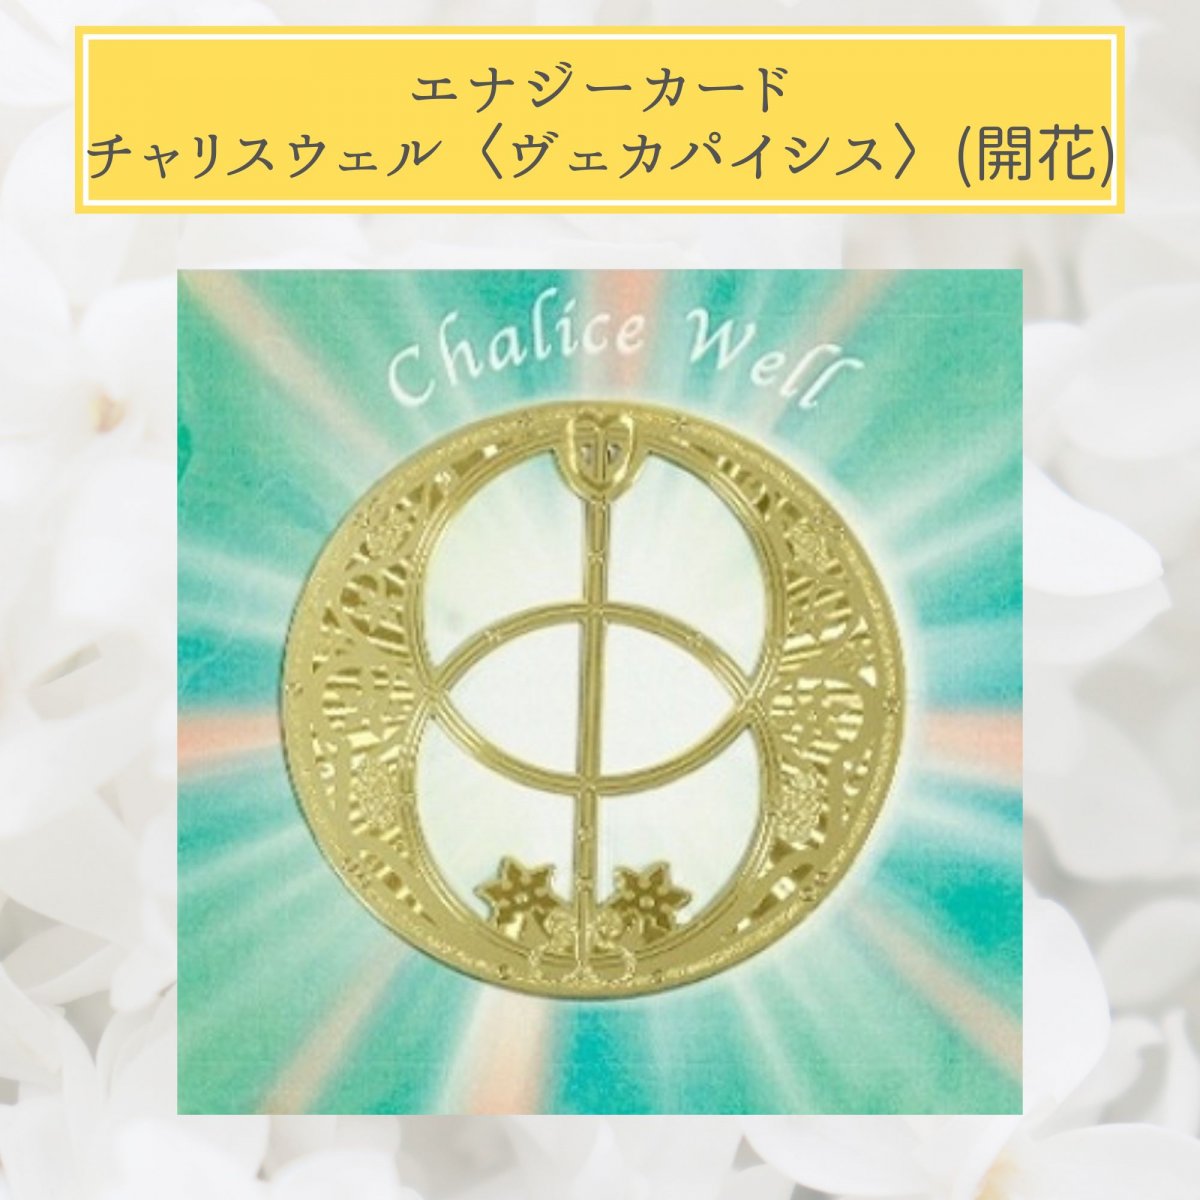 【Crystal Mind】チャリスウェル(ヴェシカパイシス) 〔開花〕 /エナジーカード